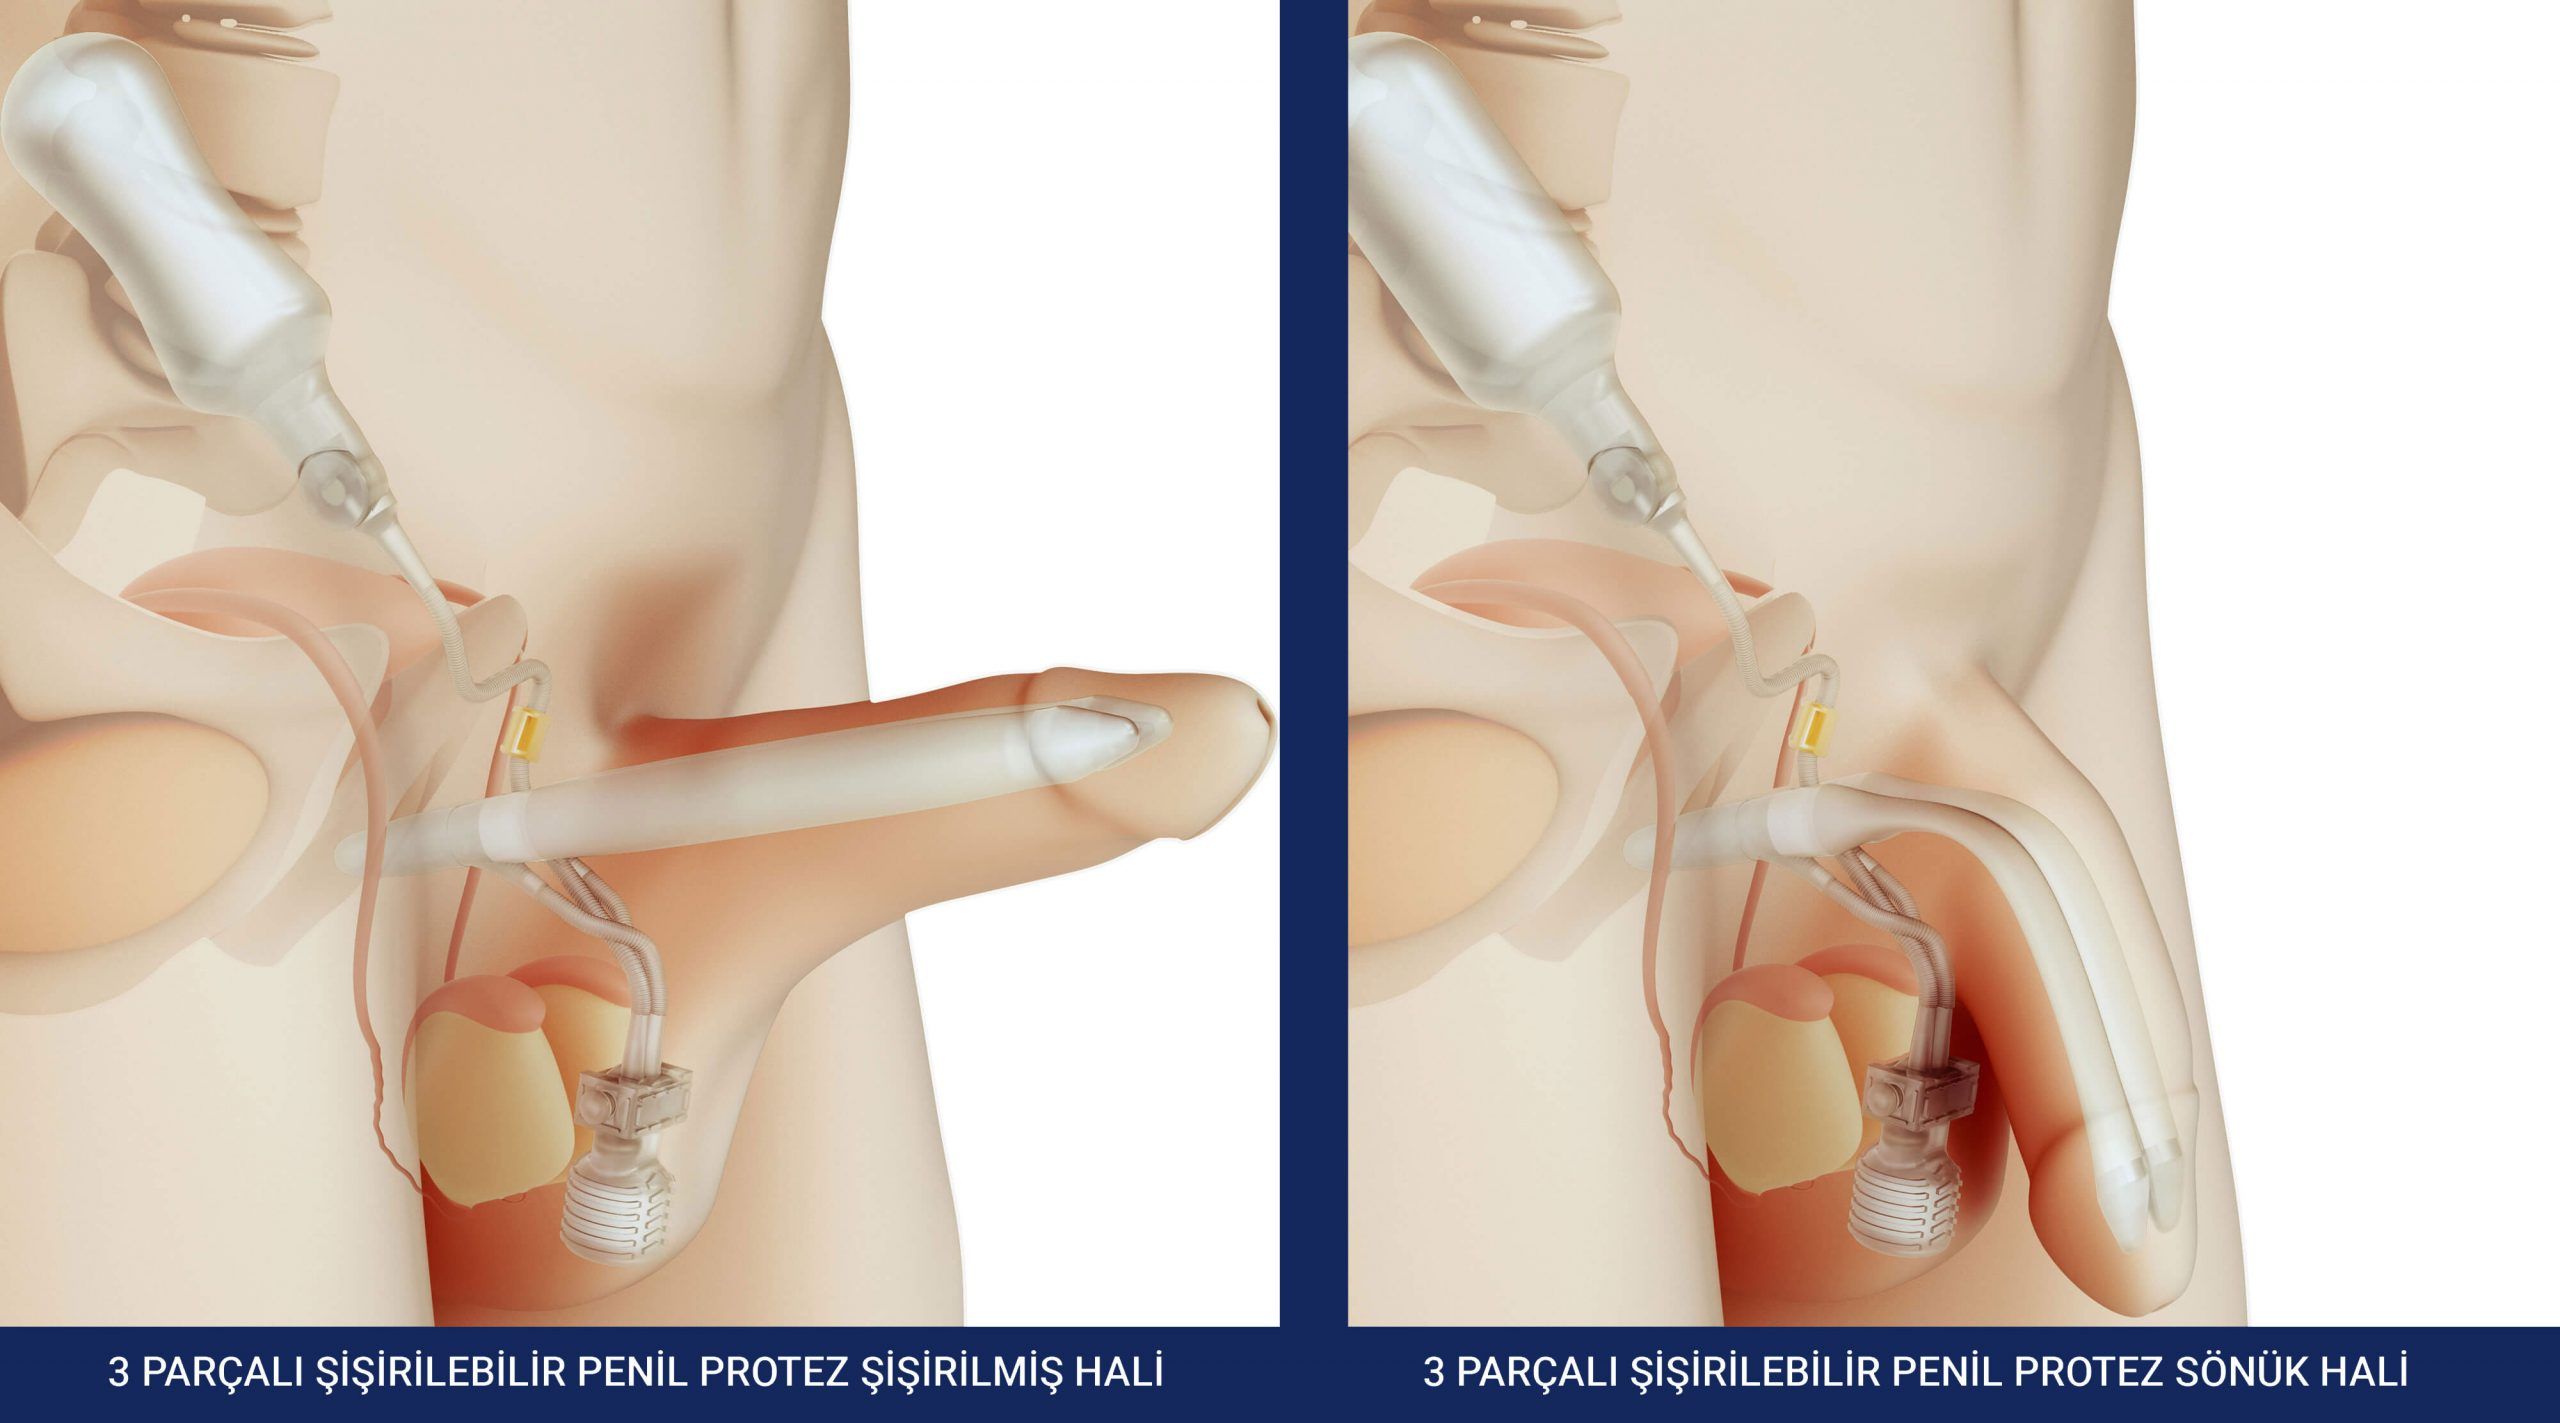 Sertleşmeye Kesin Çözüm: Penil Protez Tedavisinin Rolü ve Etkin Tedavi Seçenekleri